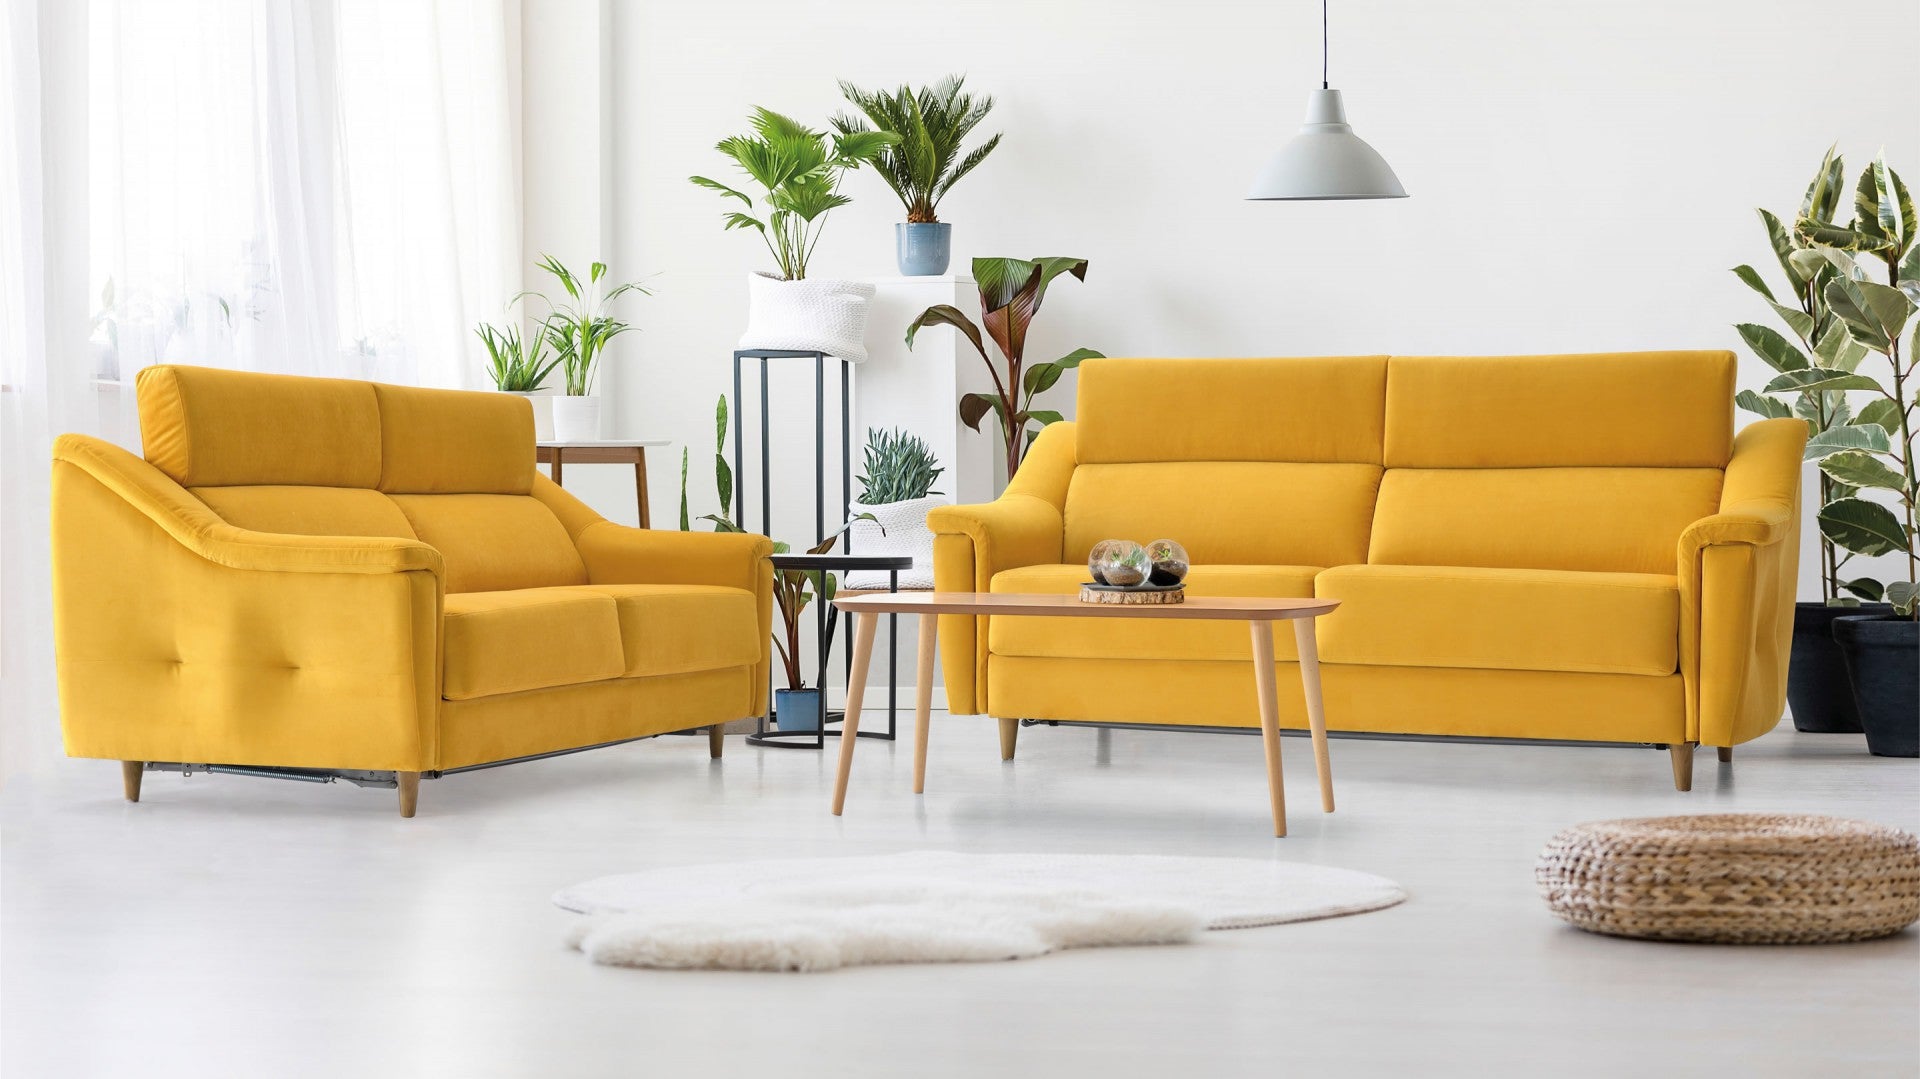 Conjunto de cabeceira moderna e 2 mesas de cabeceira - Lara - Don Baraton:  sofás, colchões e loja de móveis